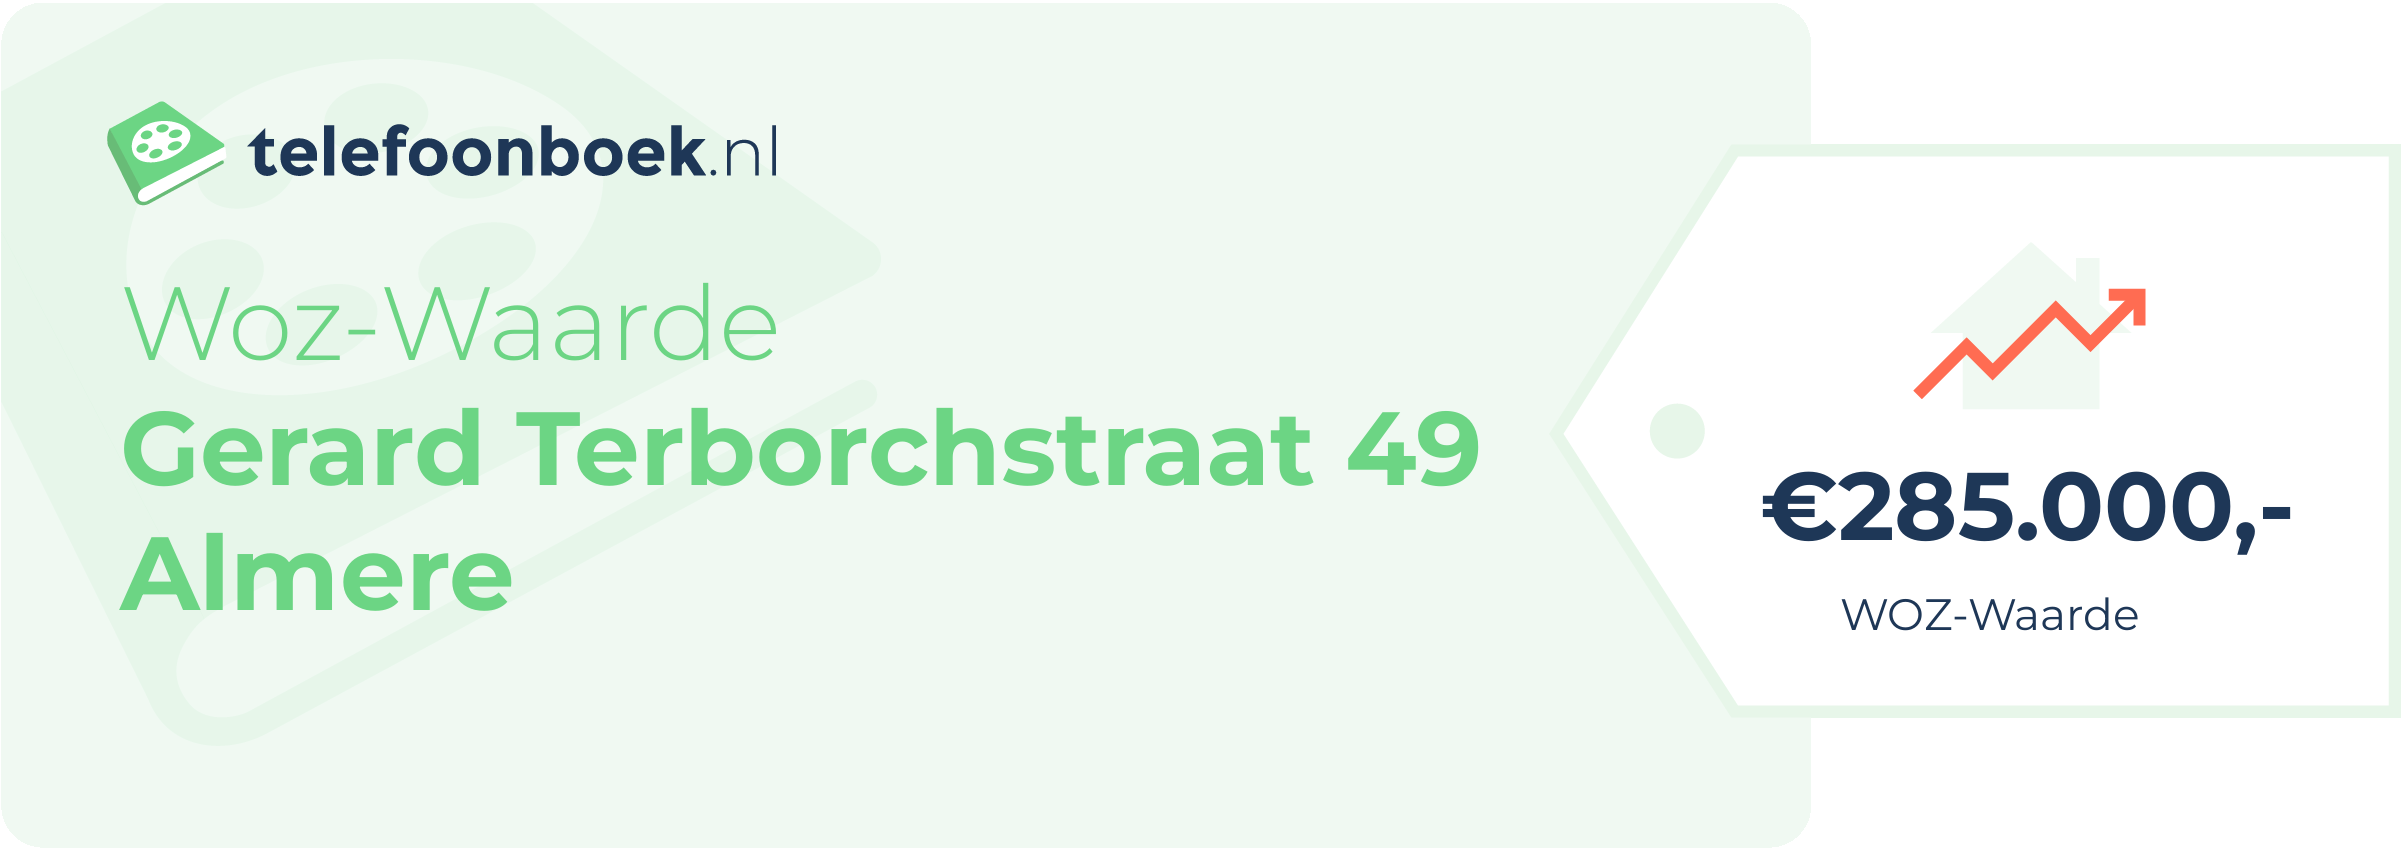 WOZ-waarde Gerard Terborchstraat 49 Almere